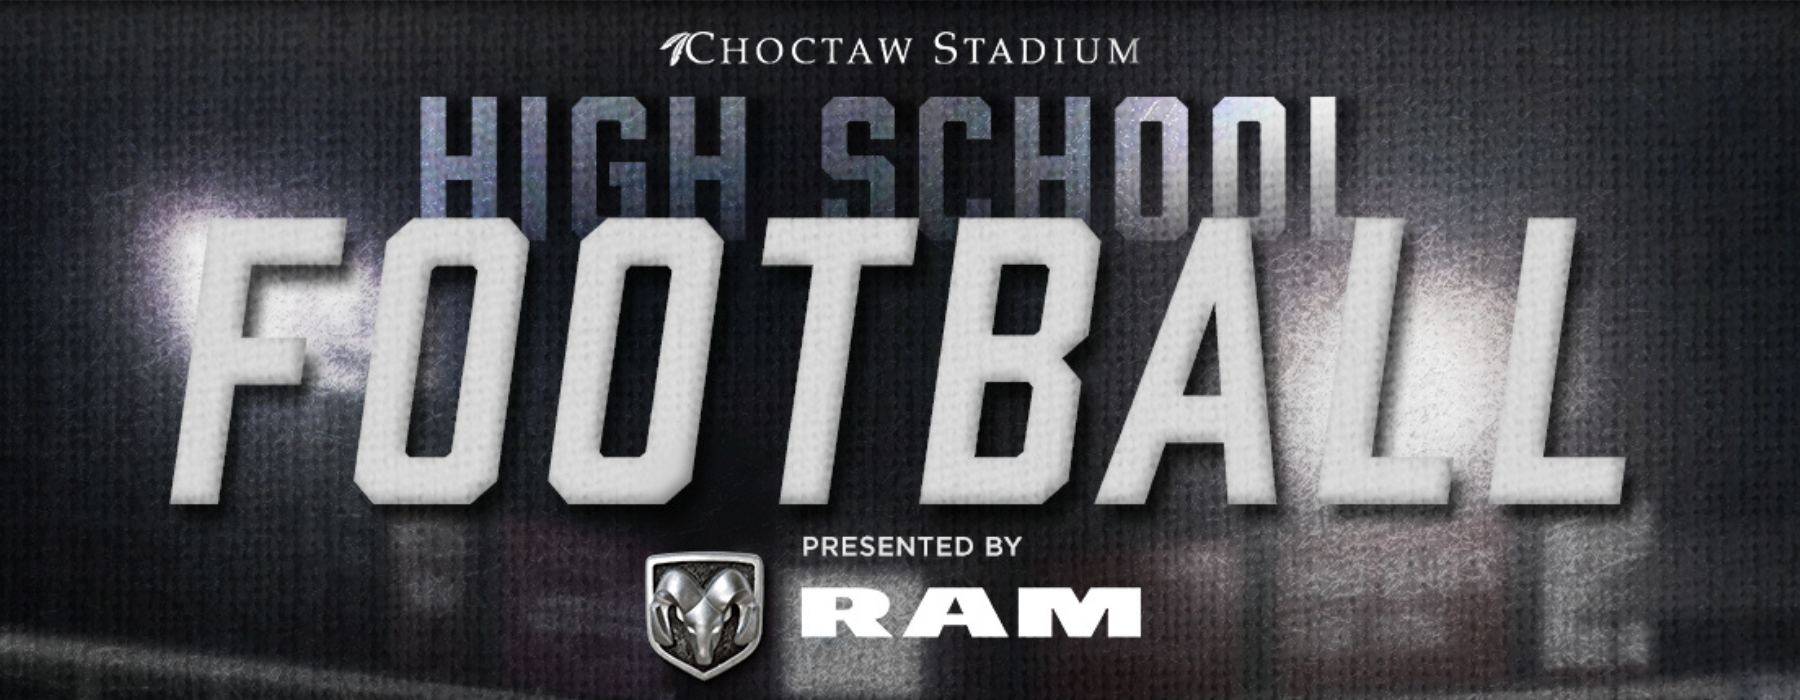 High School Football Presented by RAM